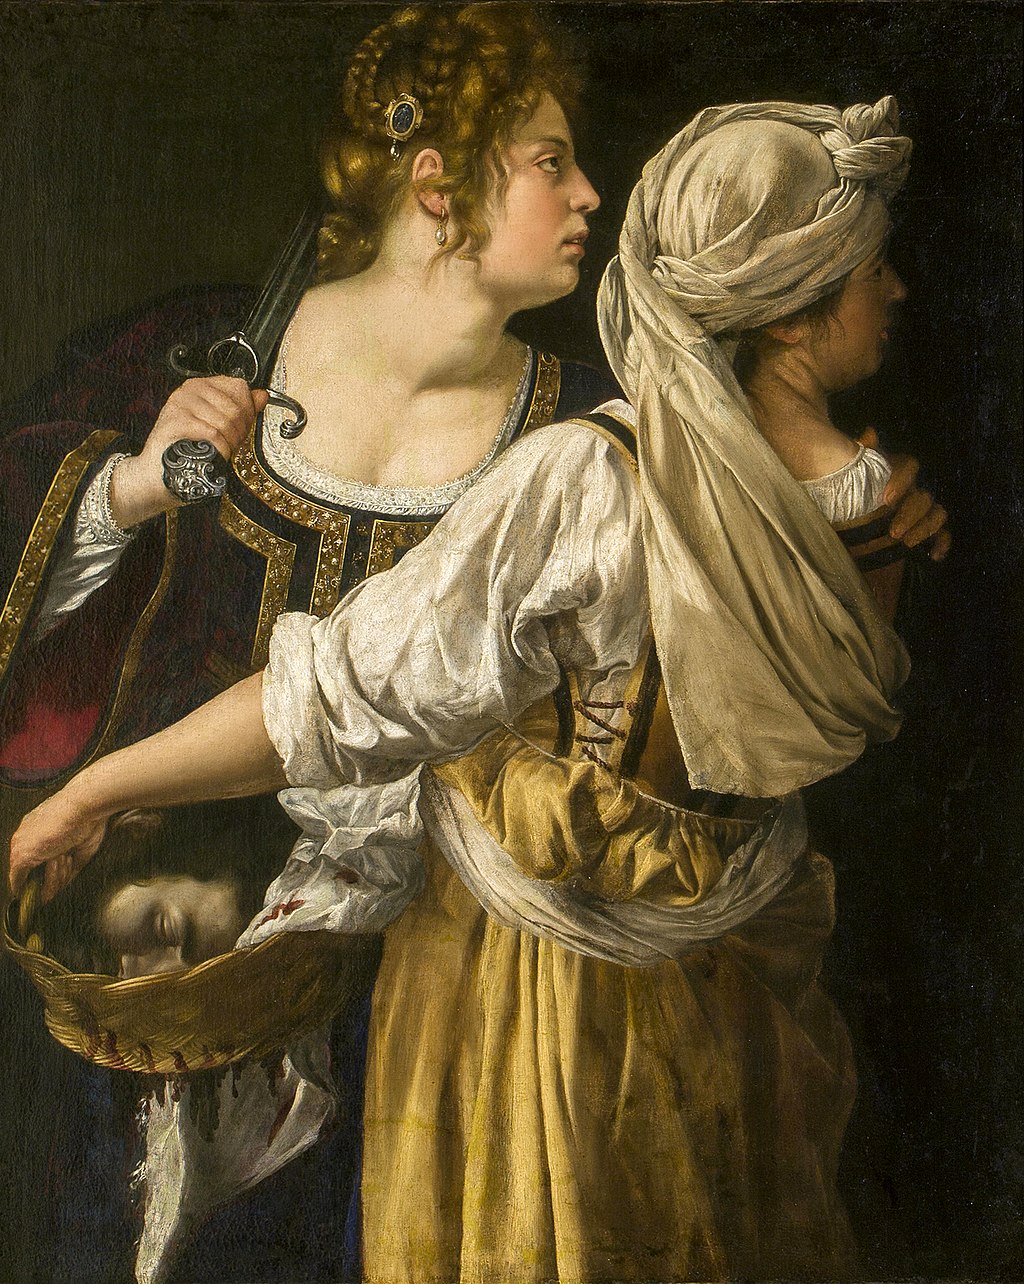 朱迪思和她的女仆 by 阿特米谢 简特内斯基 - 1613年 - 114 × 93.5 厘米 